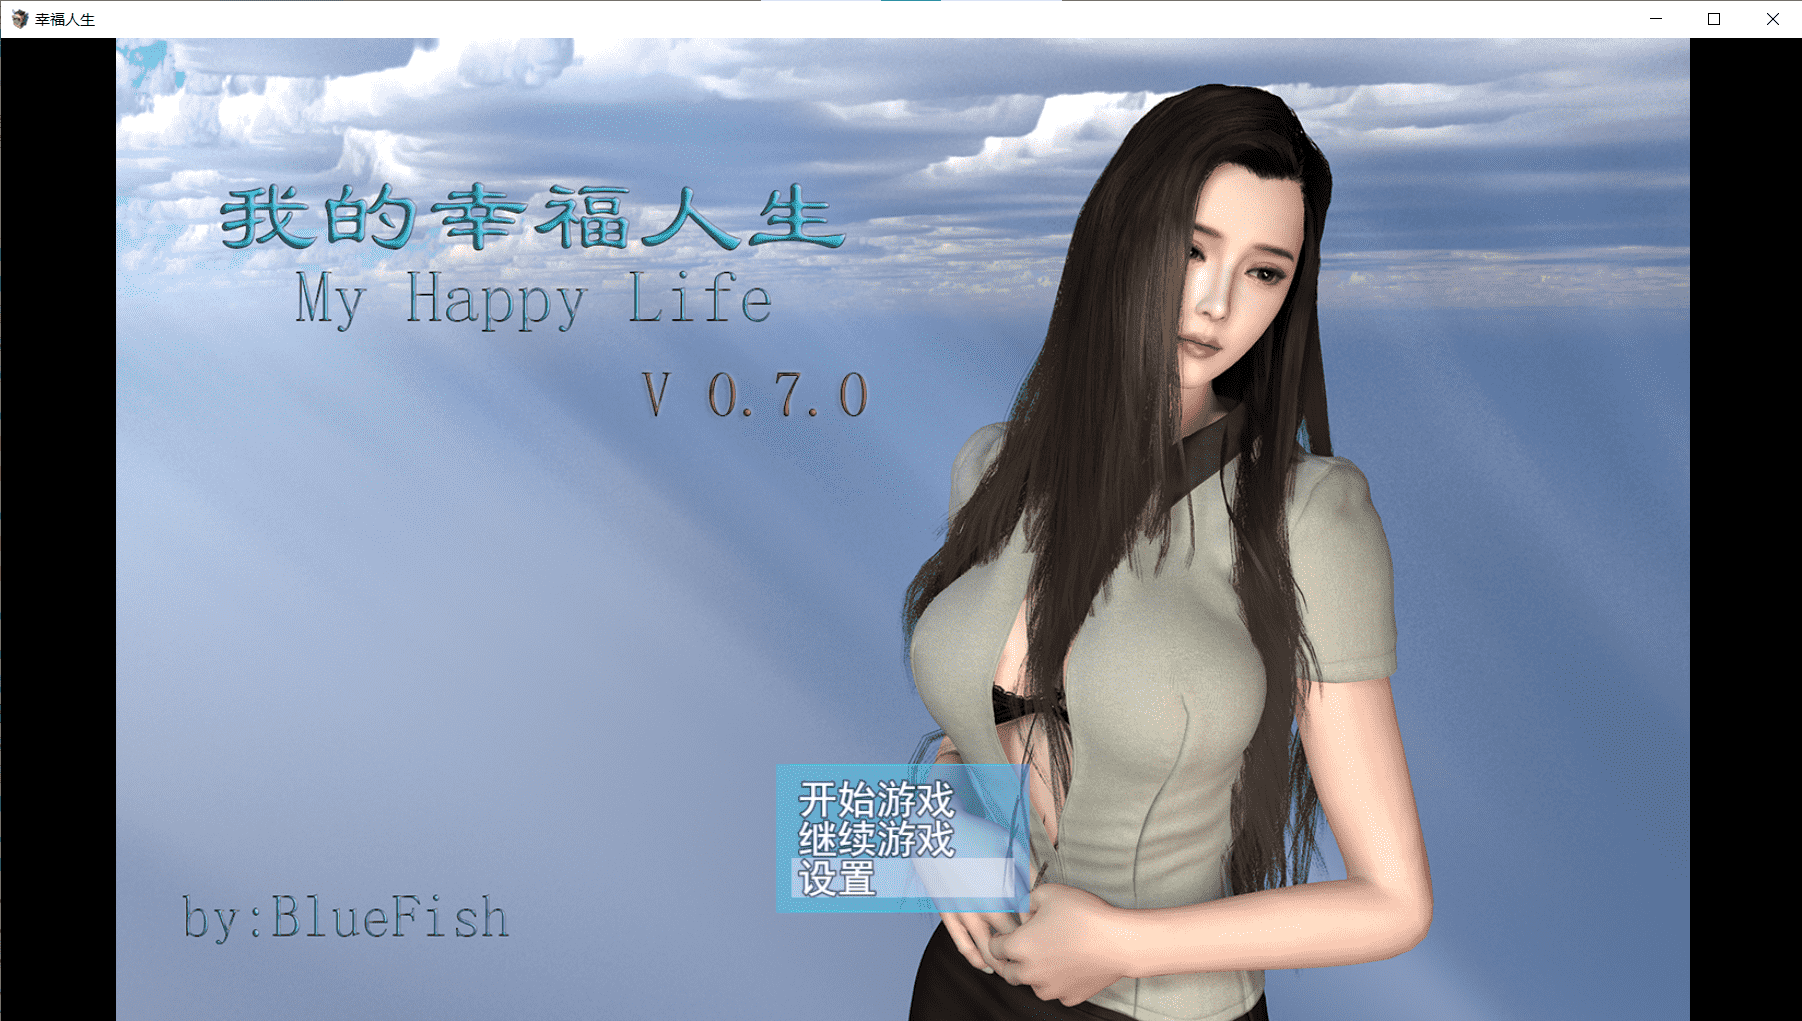 【RPG/中文/动态】我的幸福人生 V0.7.1中文版【新作/安卓+PC/5G】-小皮ACG-二次元资源分享